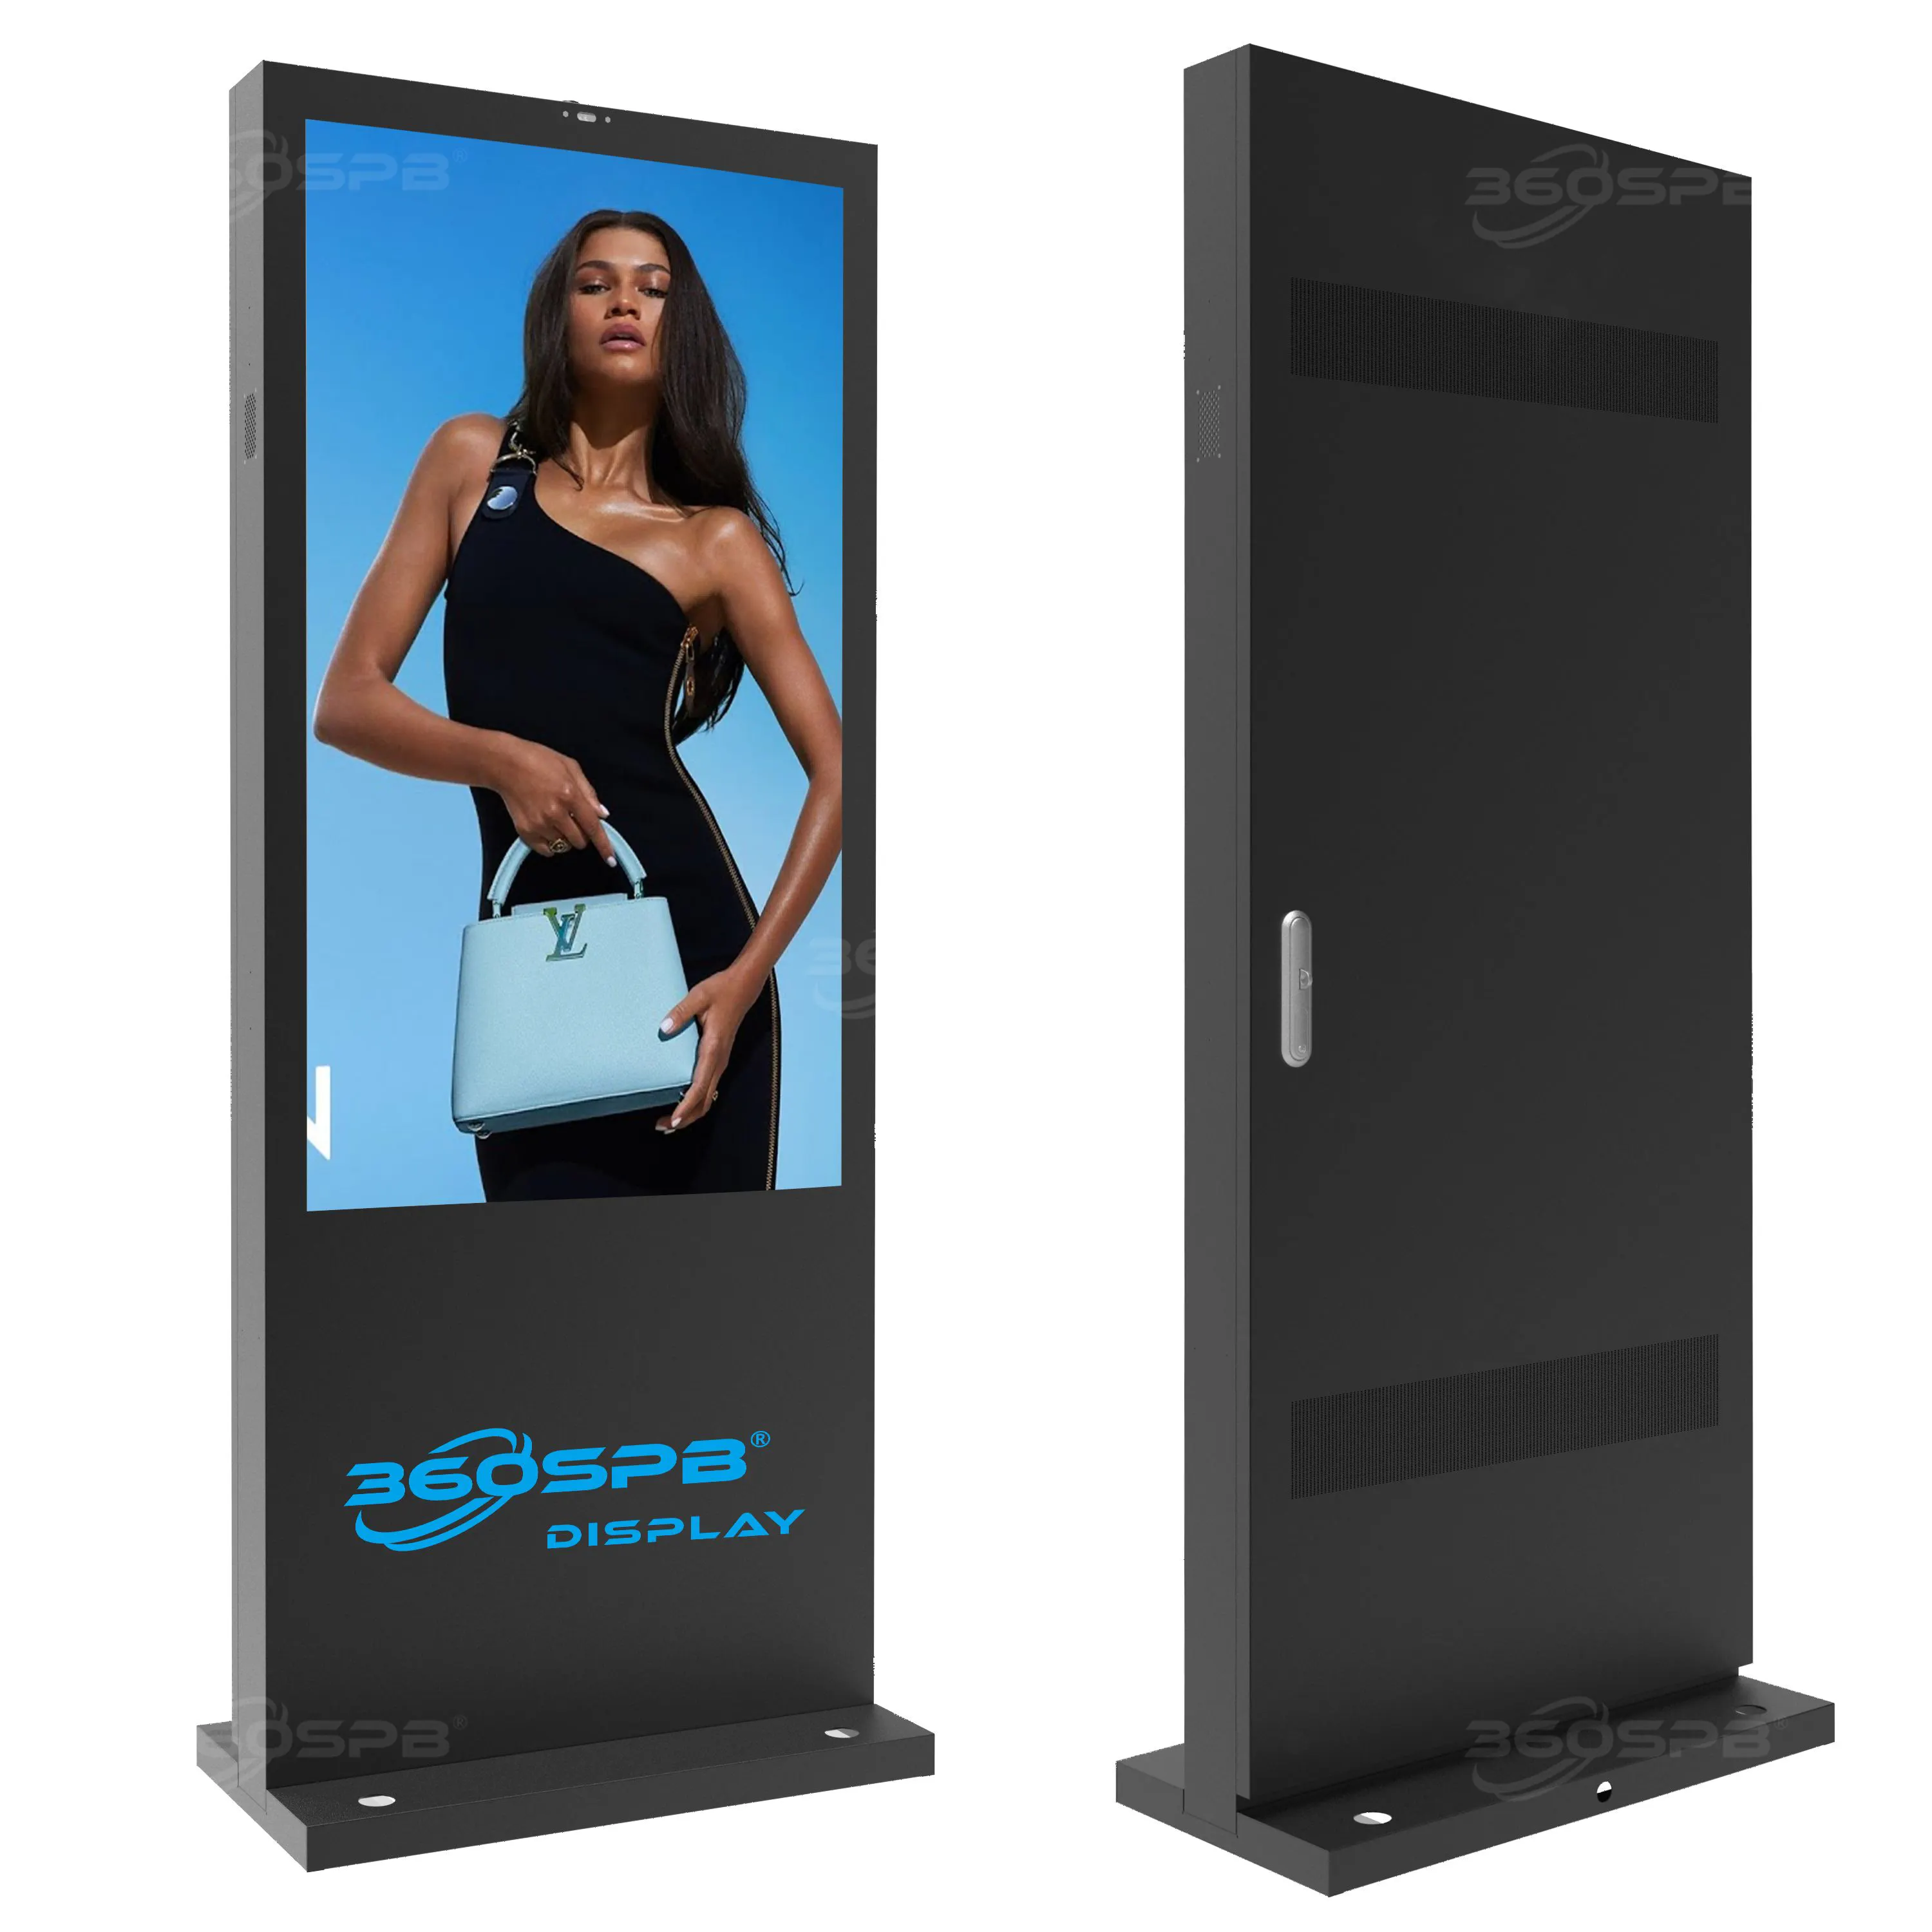 360spb Van S32b Vloerstaande 32 Inch Led Touchscreen 3d Hologram Display Digitale Bewegwijzering